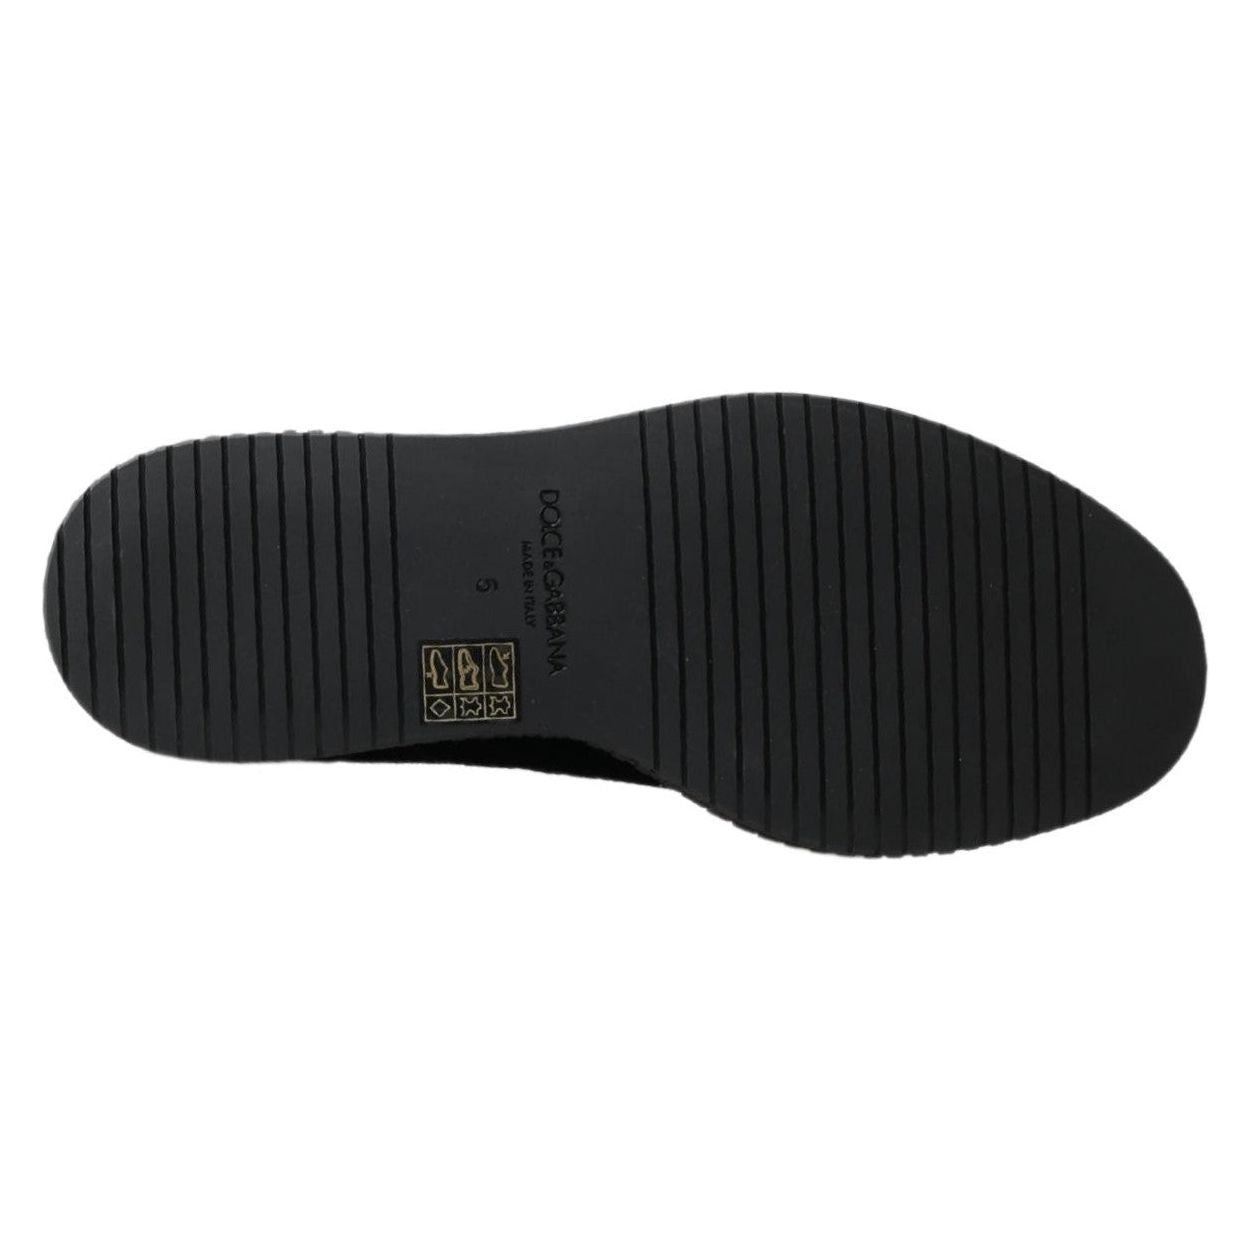 Dolce & Gabbana Chic Black Suede Espadrille Sneakers black-suede-leather-casual-espadrille-shoes-1